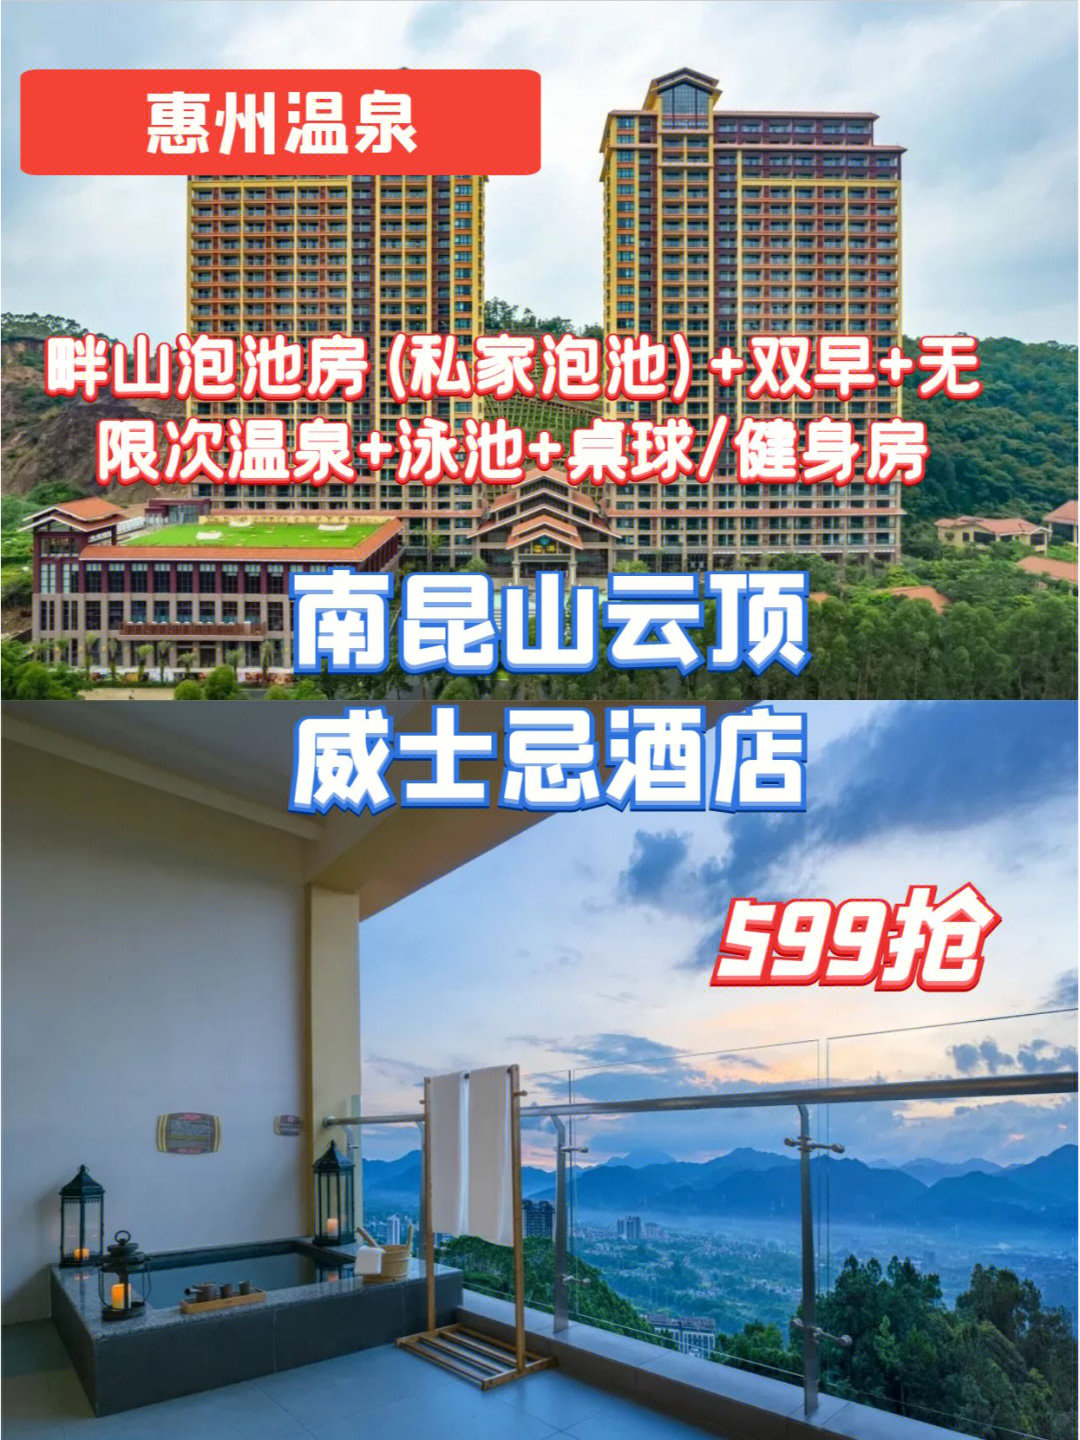 惠州豪景酒店三楼沐足图片